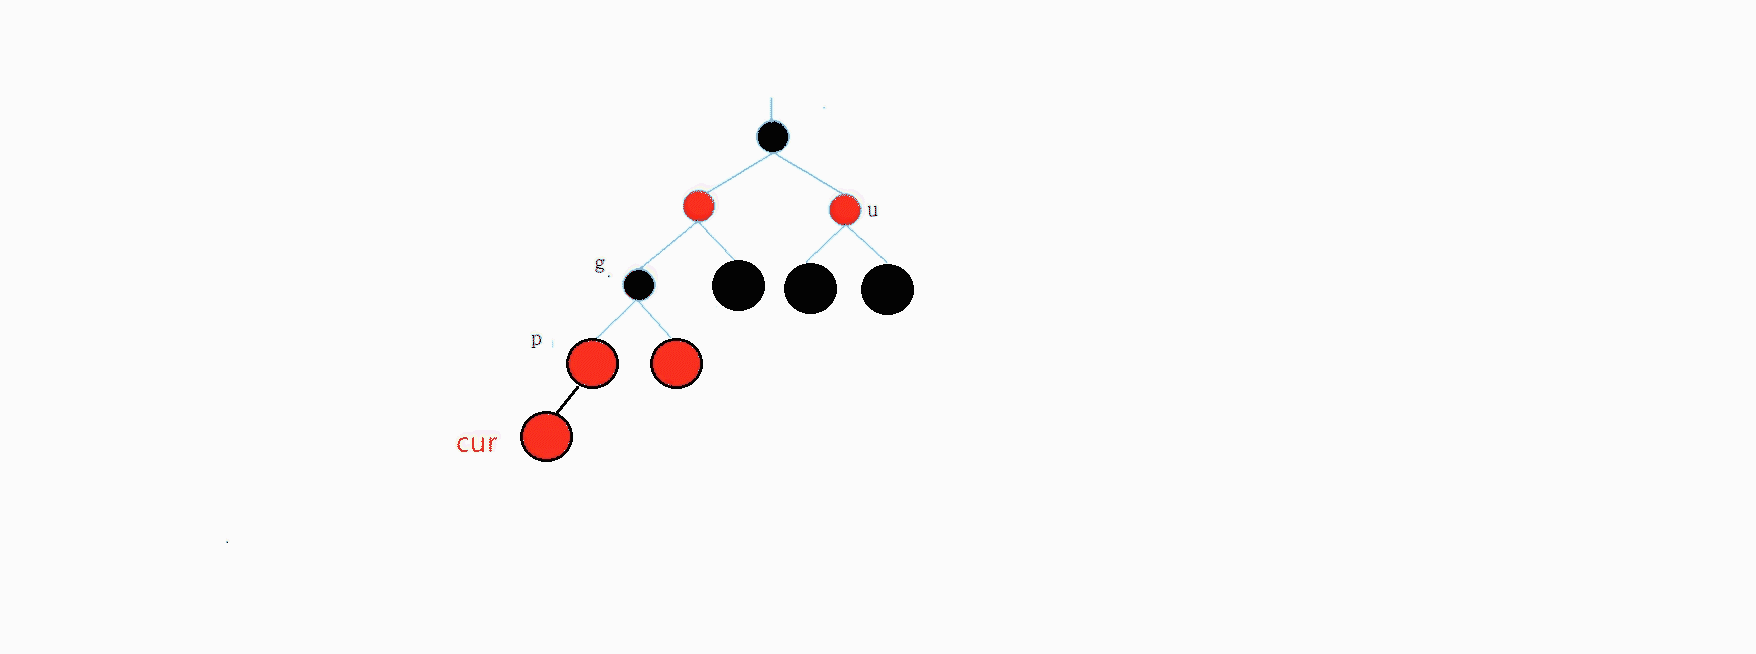 AVL树和红黑树的模拟实现_搜索二叉树_27